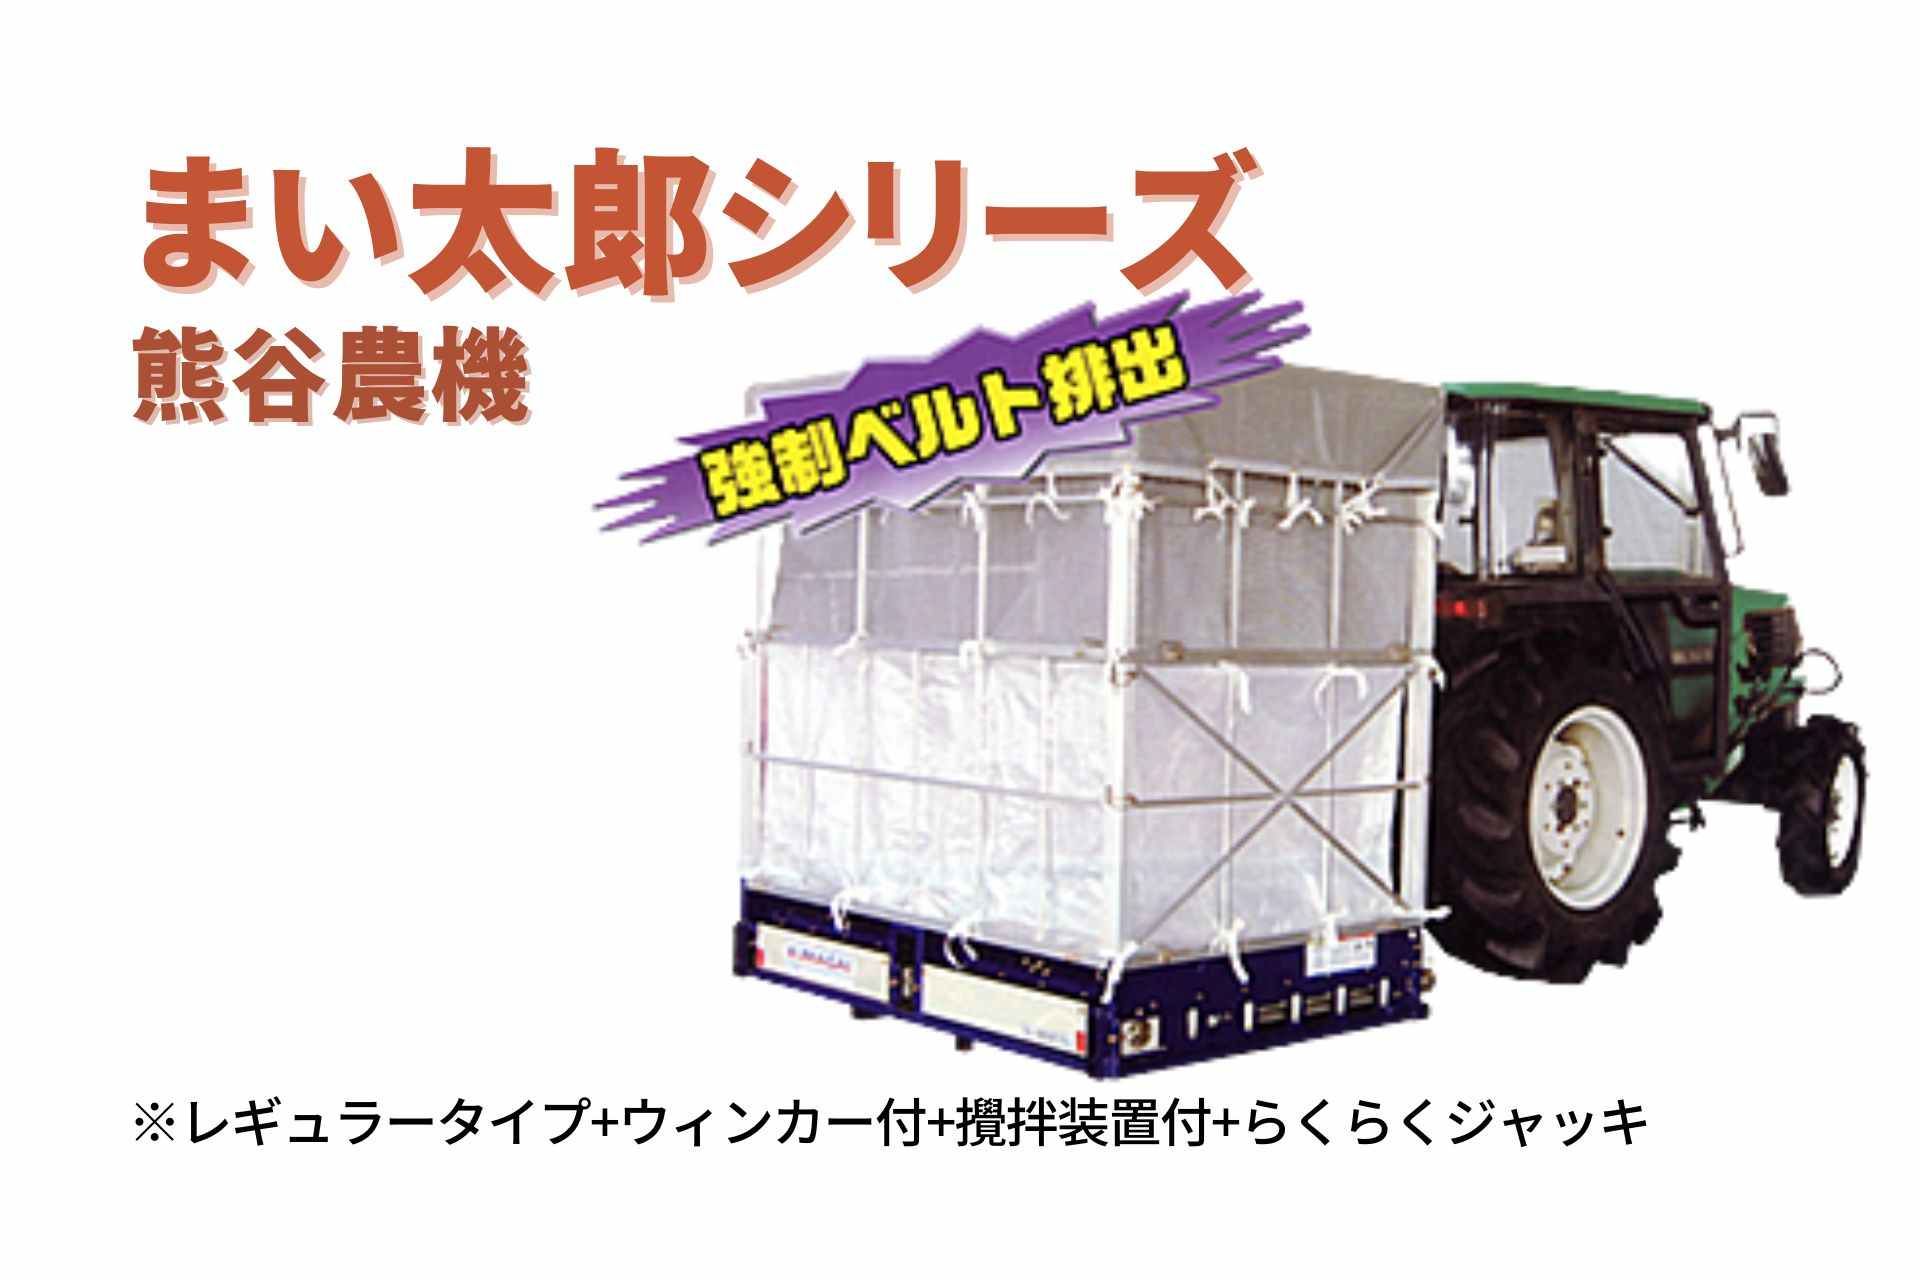 籾殻散布機 まい太郎 レギュラータイプ ウィンカー付 攪拌機能付 らくらくジャッキ MTA-33RJW(L) 熊谷農機